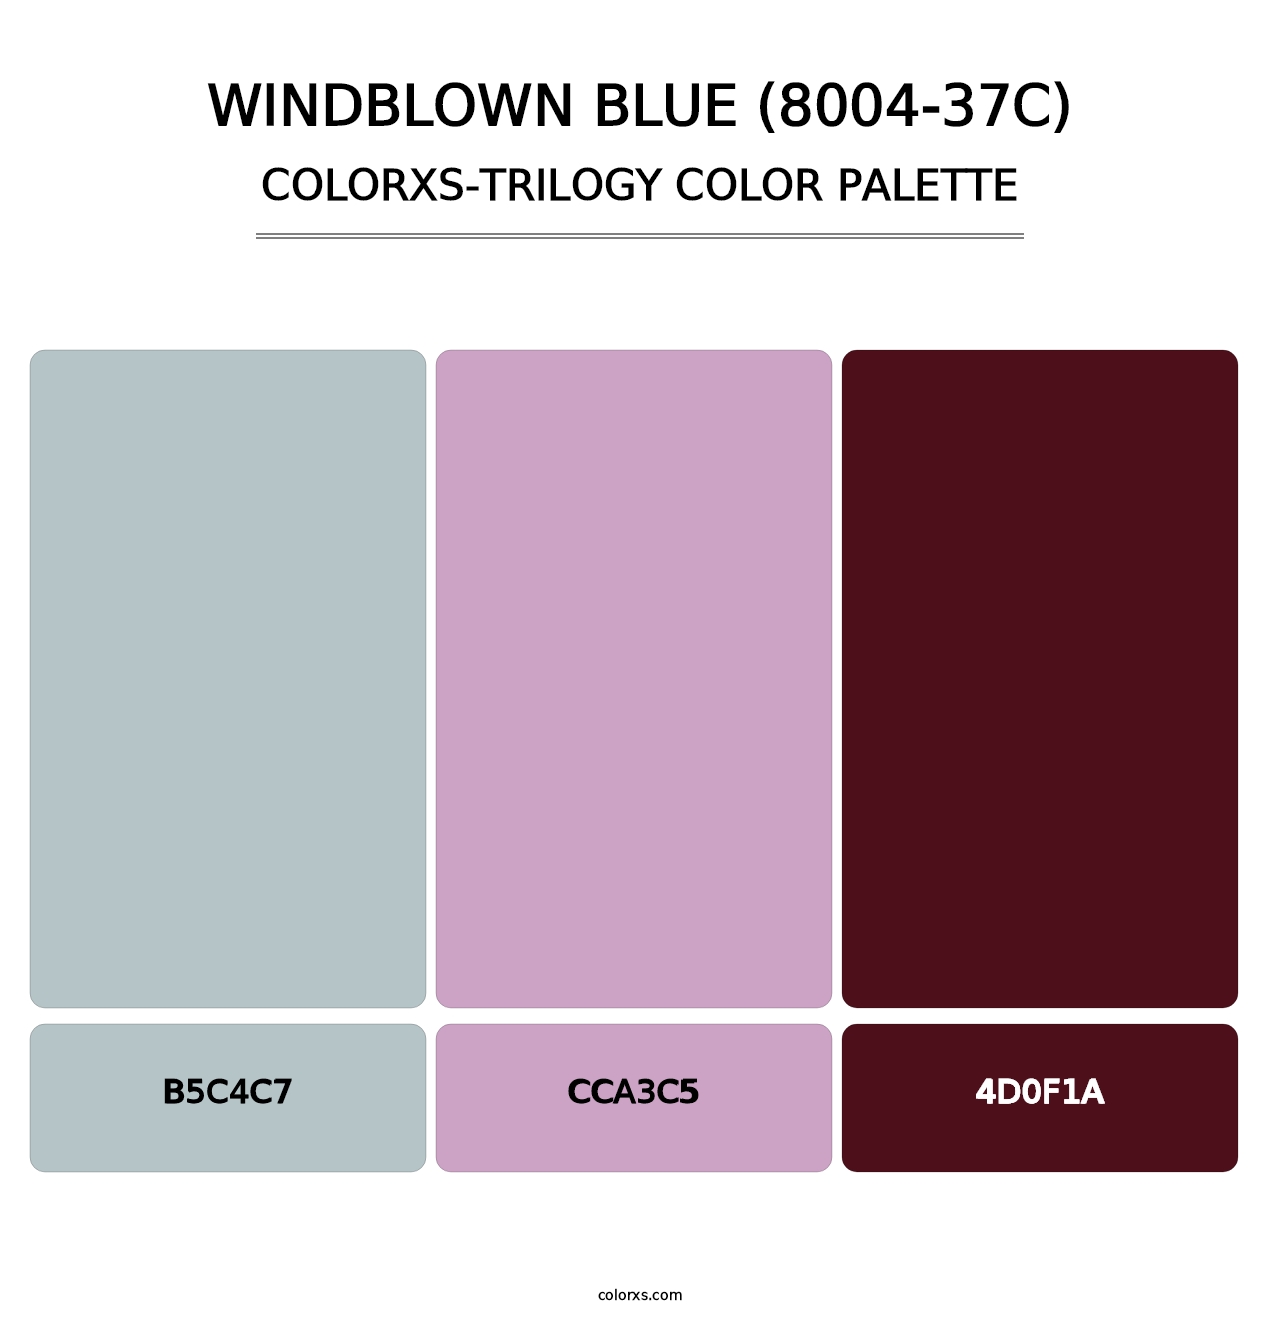 Windblown Blue (8004-37C) - Colorxs Trilogy Palette